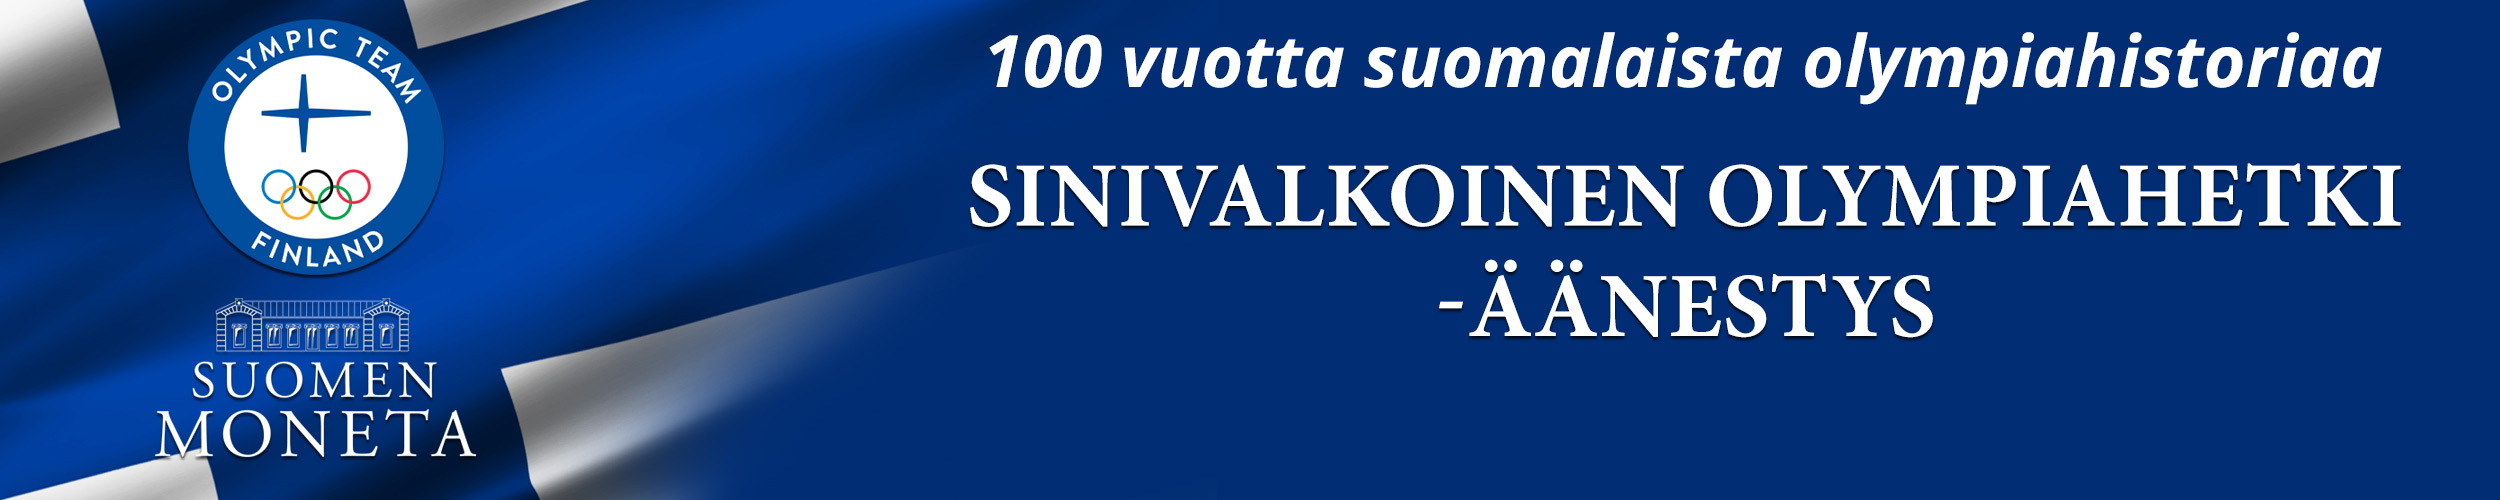 100 vuotta suomalaista olympiahistoriaa